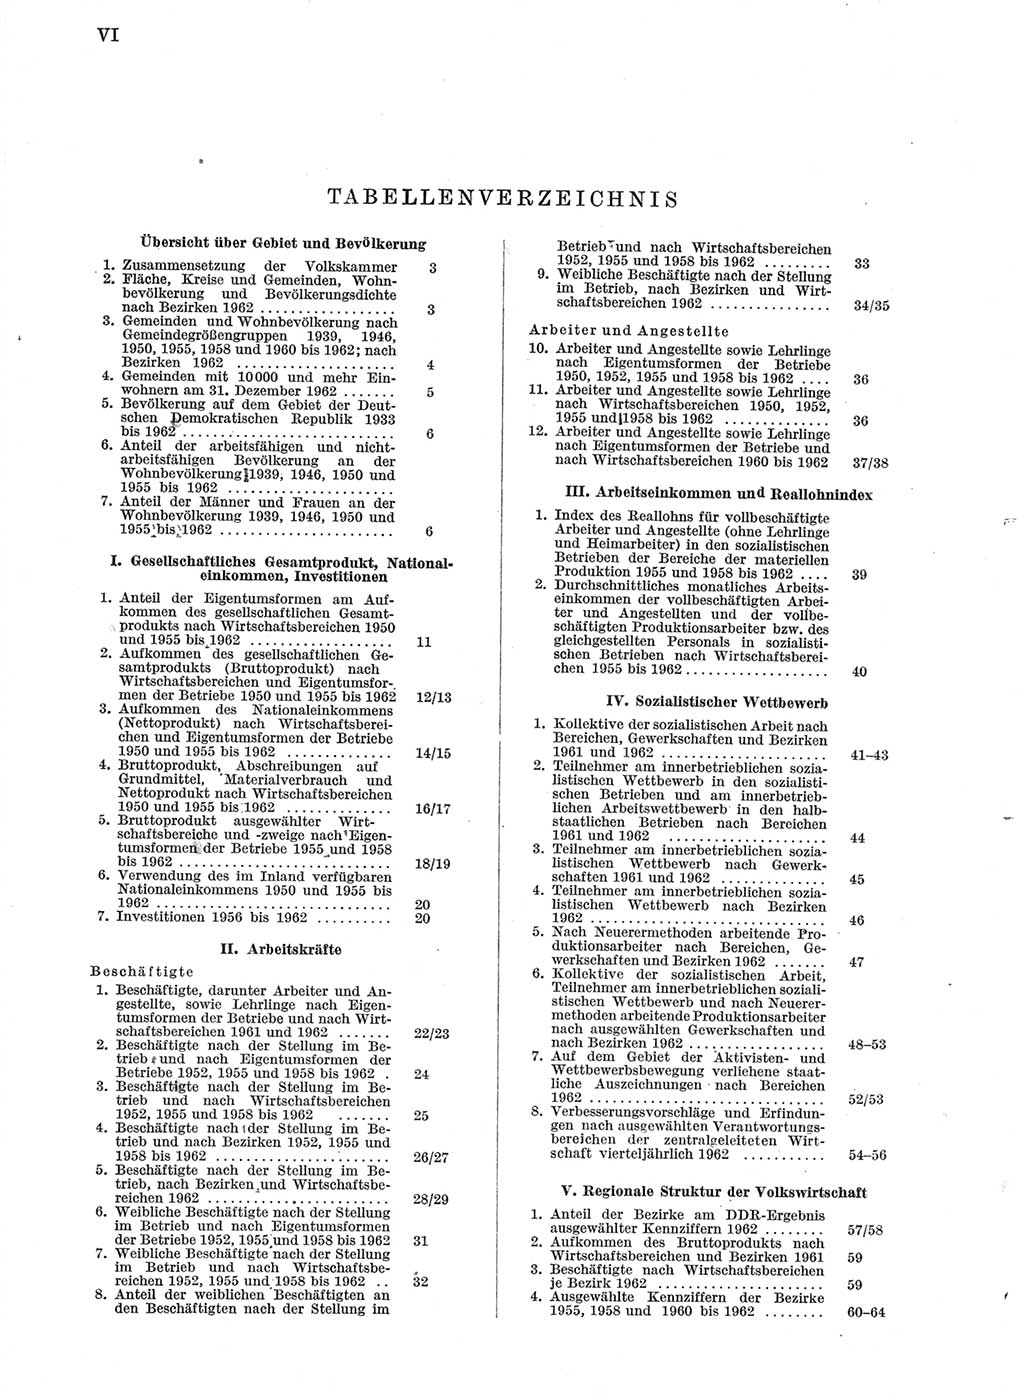 Statistisches Jahrbuch der Deutschen Demokratischen Republik (DDR) 1963, Seite 6 (Stat. Jb. DDR 1963, S. 6)